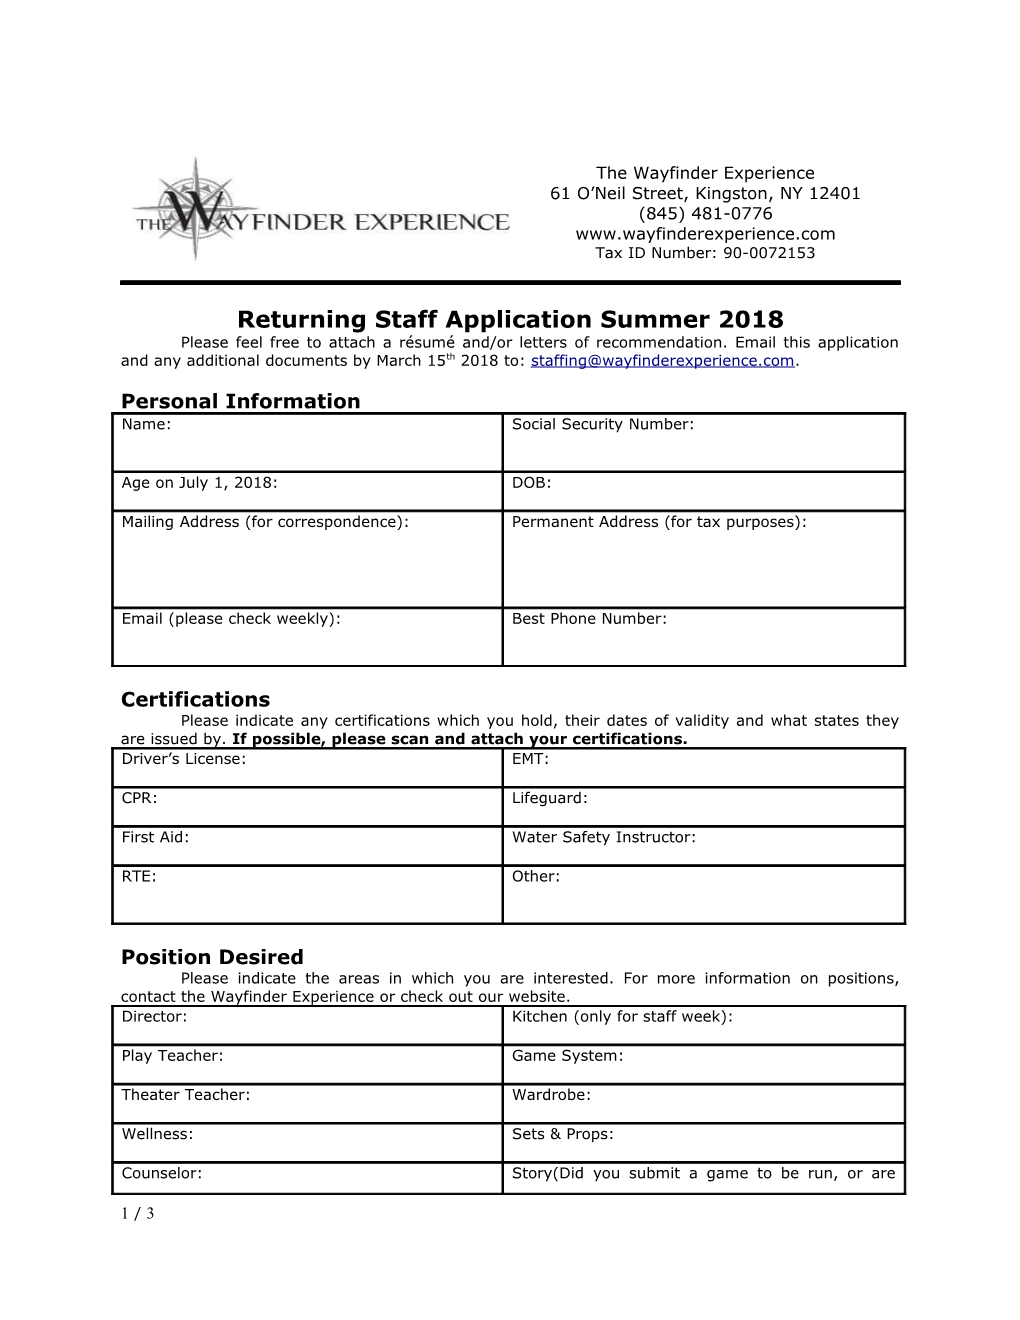 Returning Staff Application Summer 2018